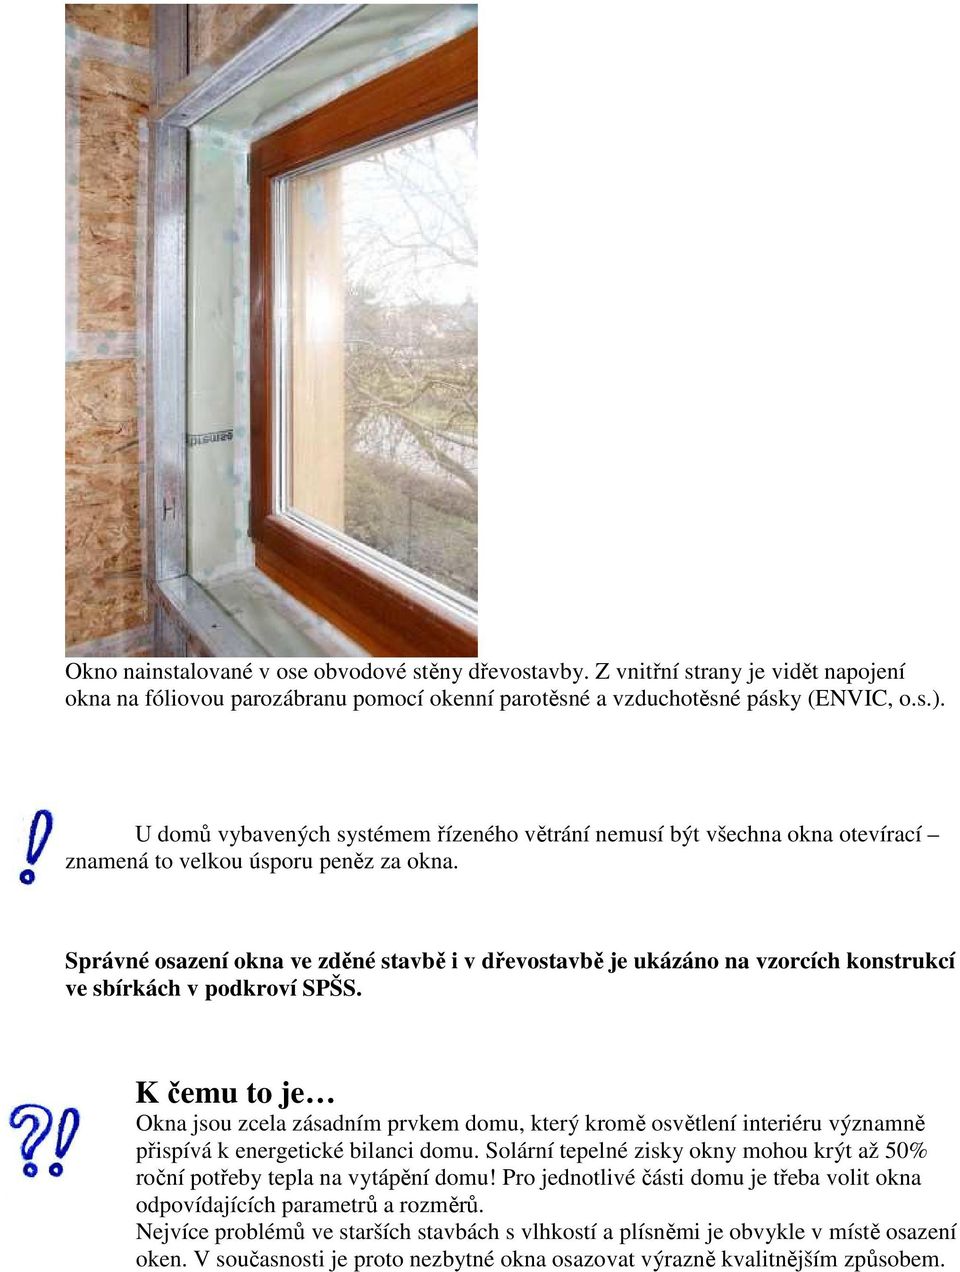 Osazování oken a dveří Okna a dveře pro nízkoenergetické a pasivní domy  (NED a PD) - PDF Stažení zdarma